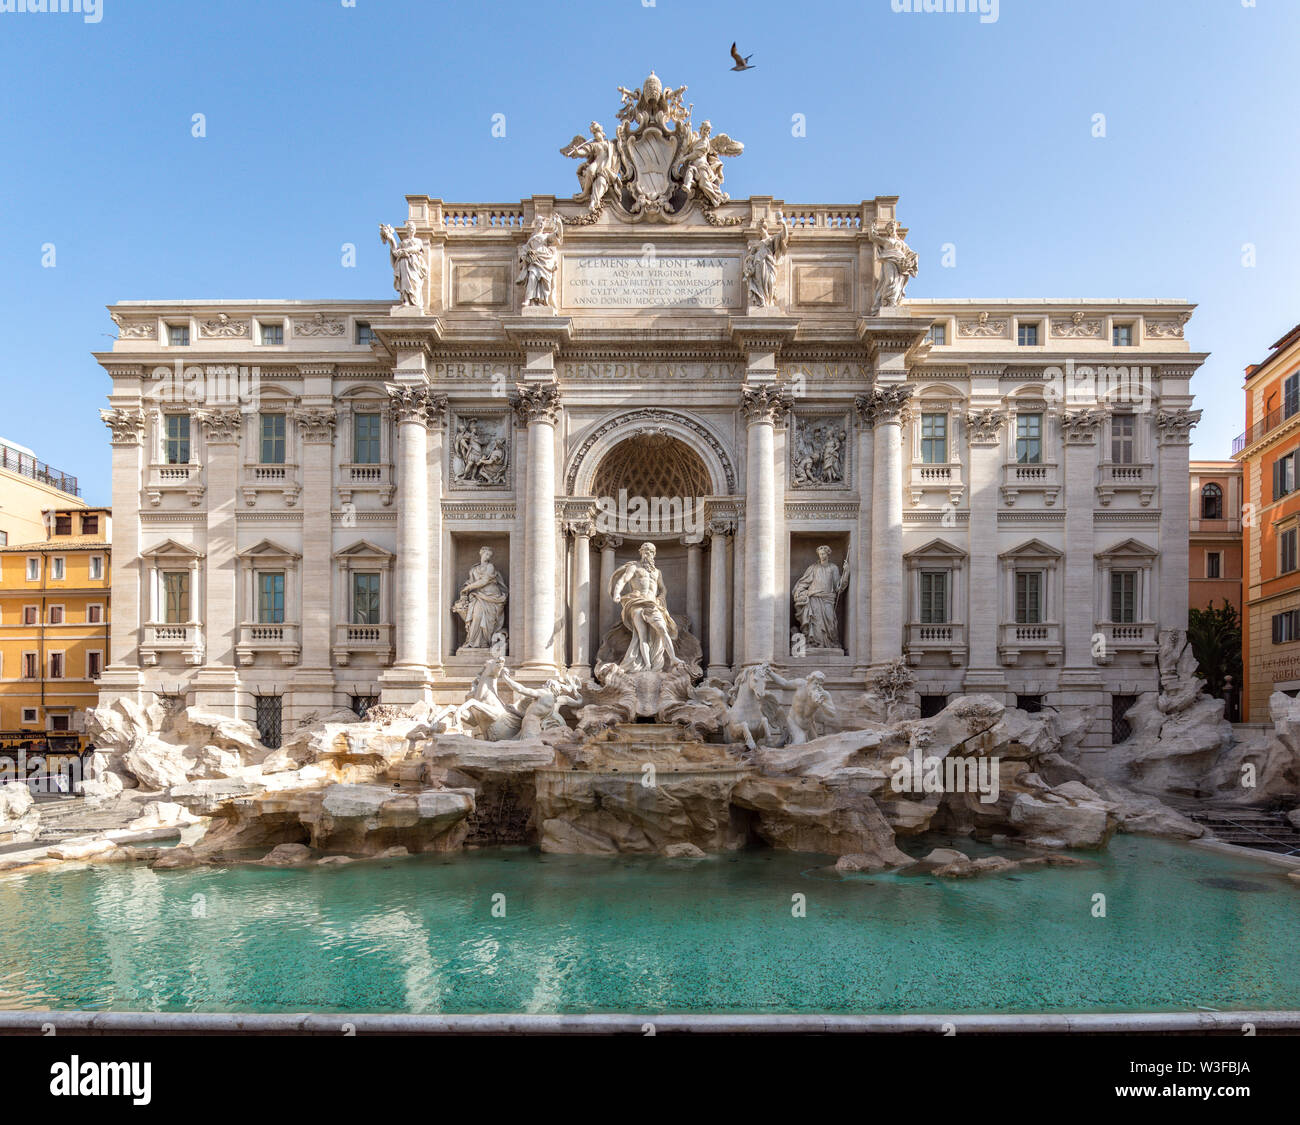 La fontana de Trevi, temprano en la mañana - Roma, Italia Foto de stock